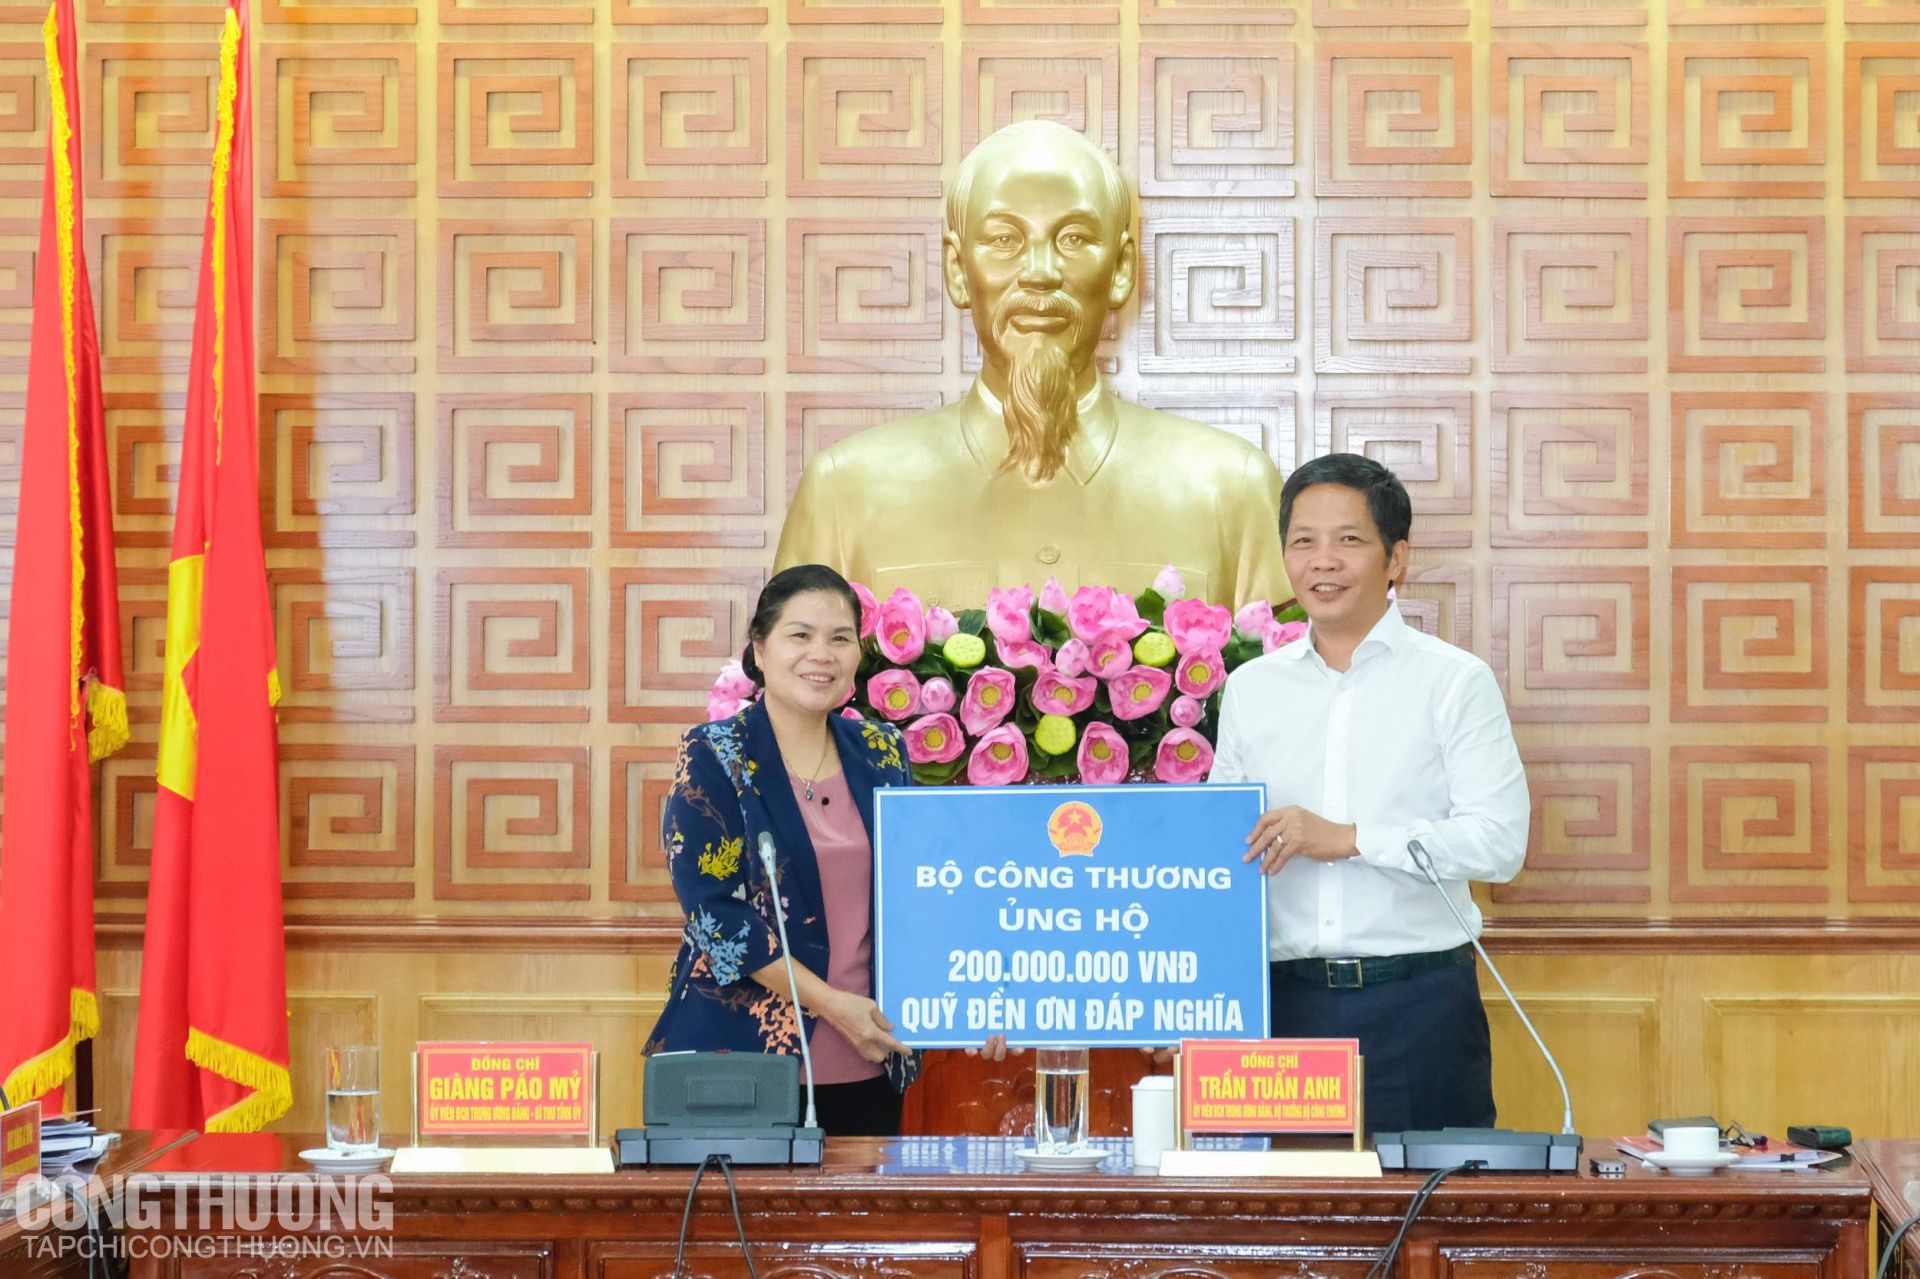 Bộ trưởng Trần Tuấn Anh trao tặng Quỹ Đền ơn đáp nghĩa tỉnh Lai Châu 200 triệu đồng